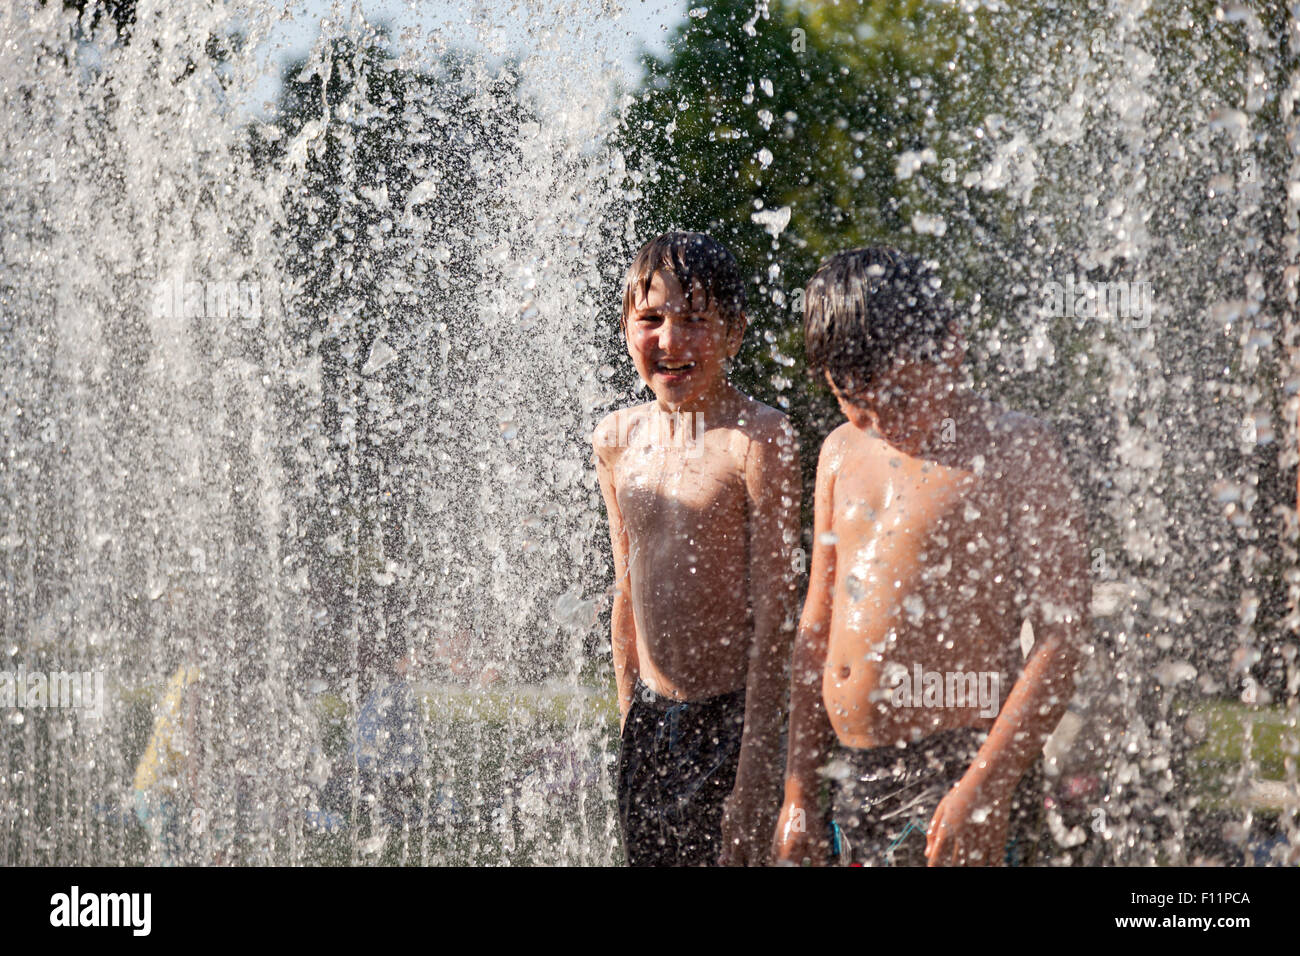 kids bathing in the Jeppe Hein fountain, Kiel, Schleswig-Holstein, Germany Stock Photo